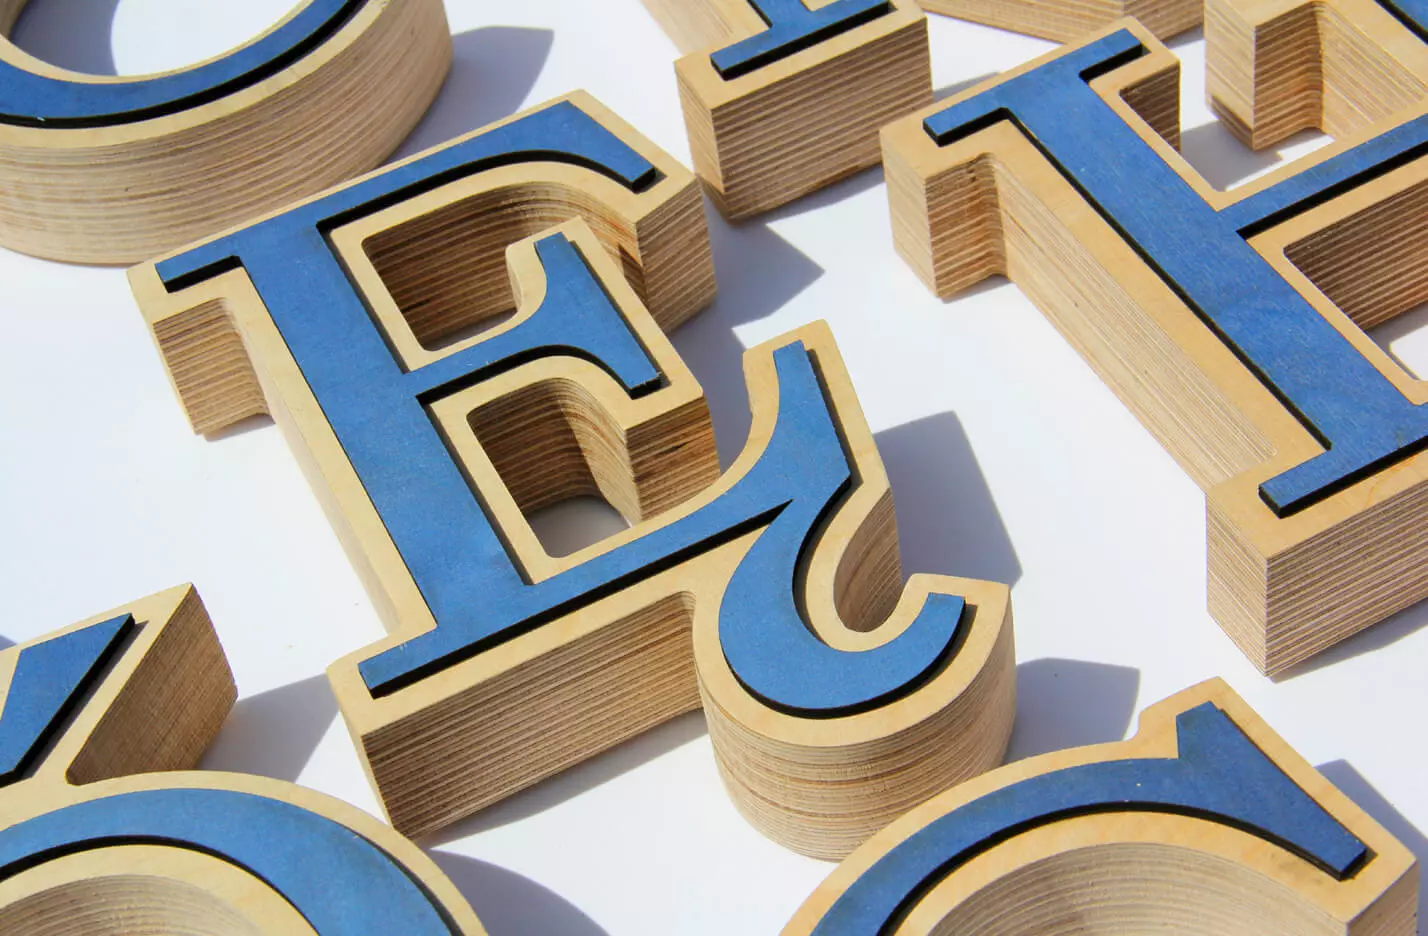 Alfabeto de madera - letras decorativas de madera en azul